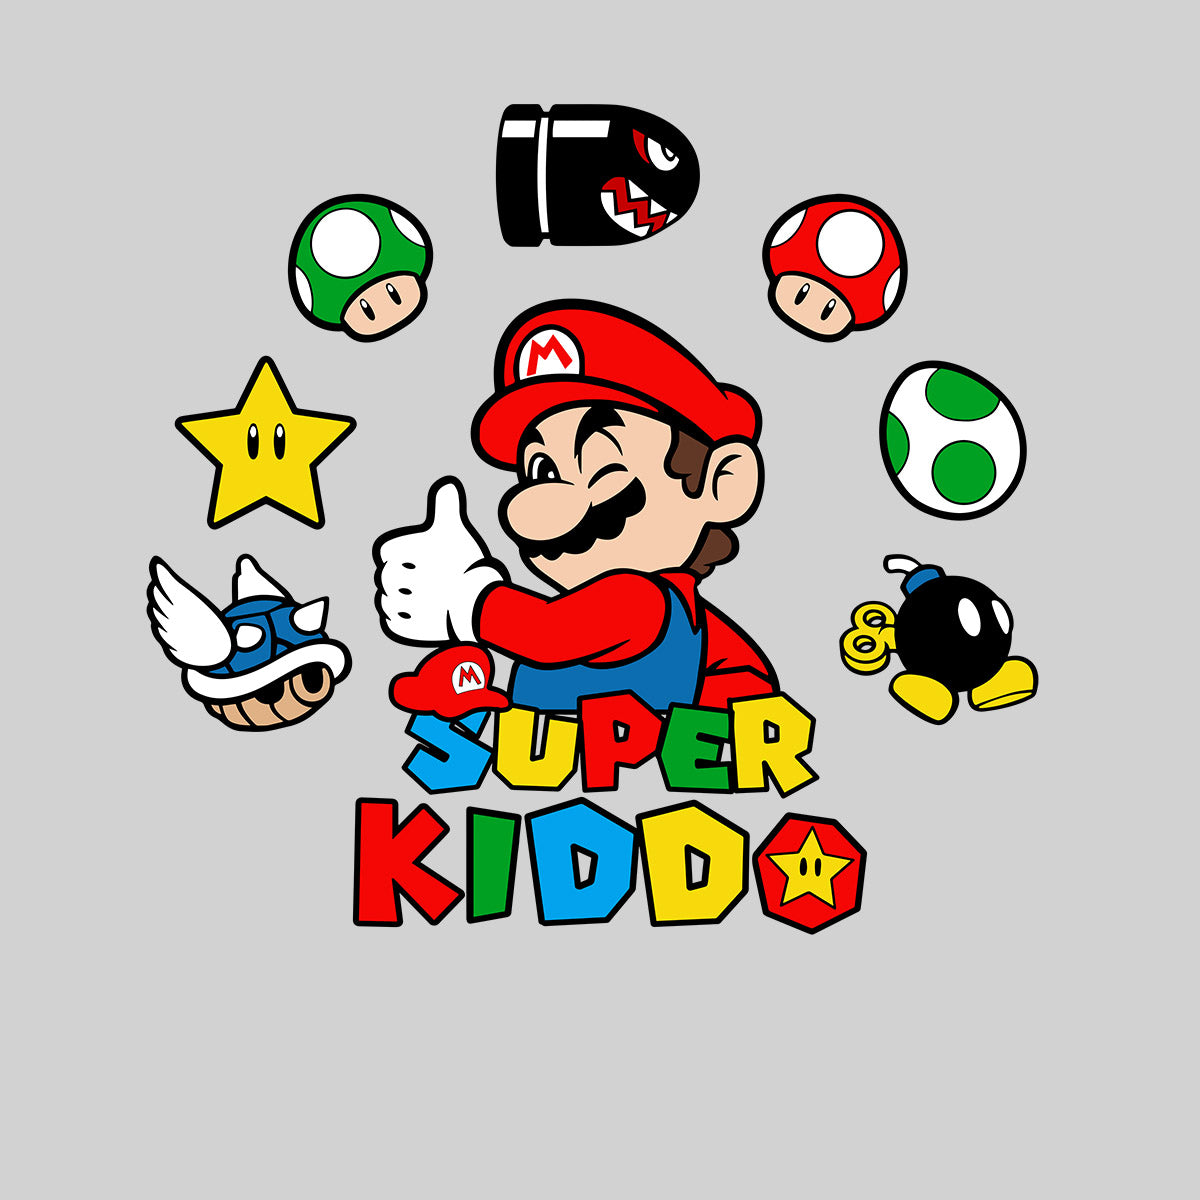 Super Kiddo T-shirt Mario Birthday Kids Custom Gaming Birthday Kids T-shirt White